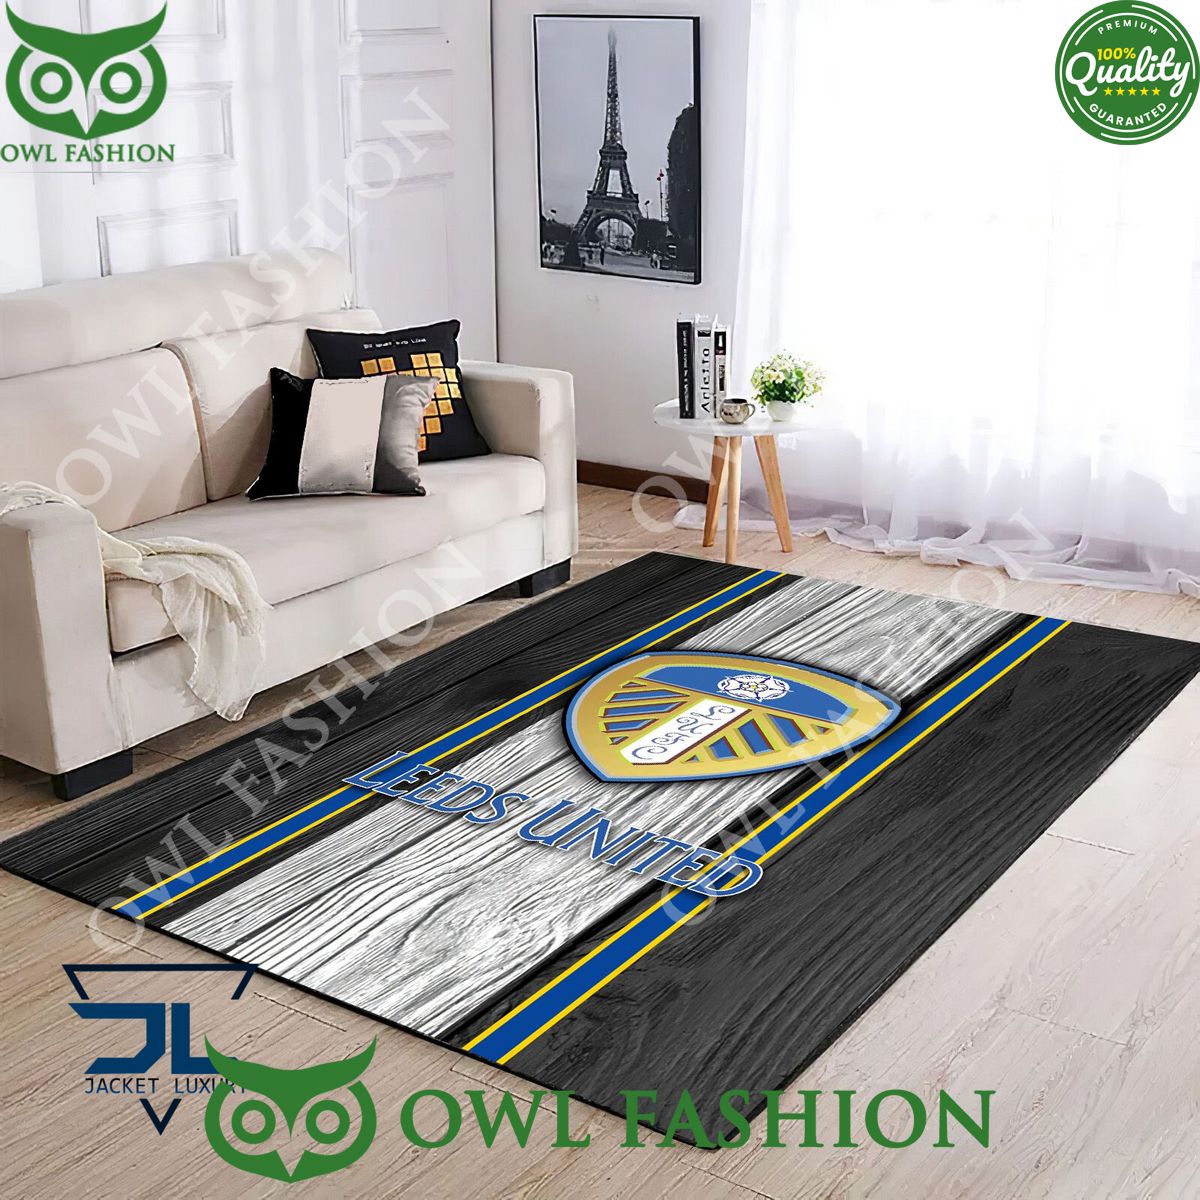 Leeds United F.C EFL Football Rug Carpet Living Room